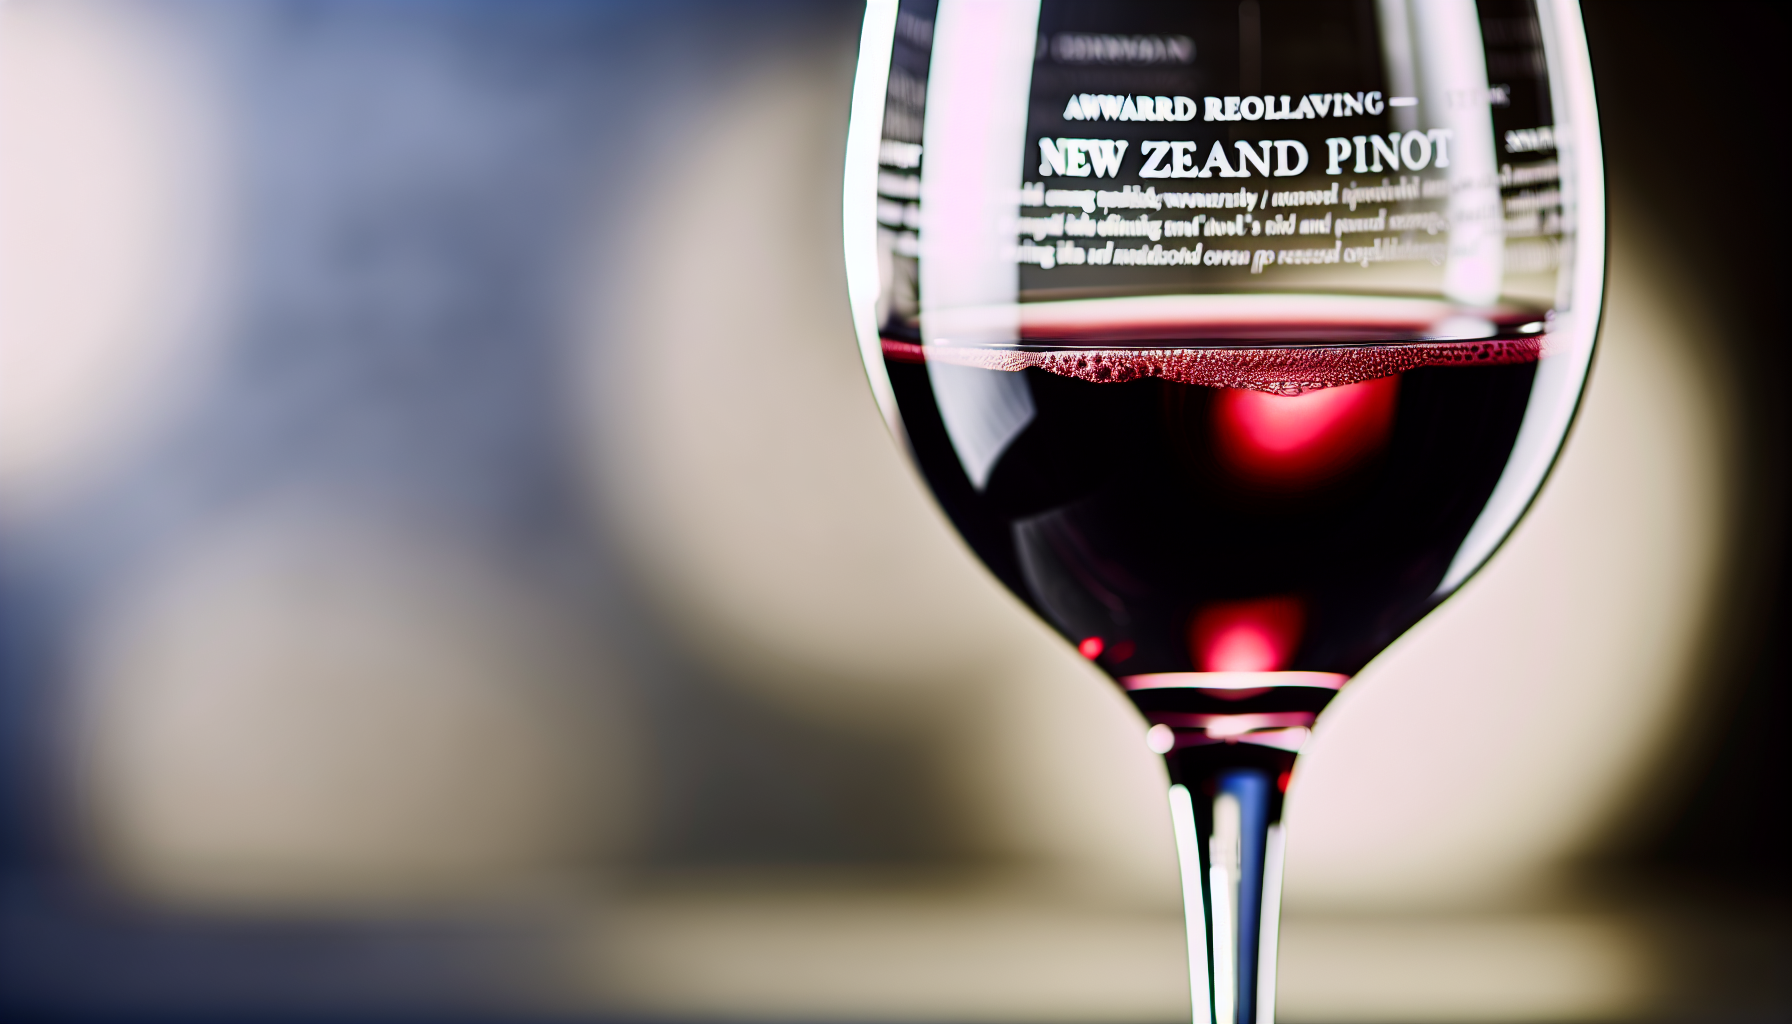 Close-up of a glass of award-winning NZ Pinot Noir